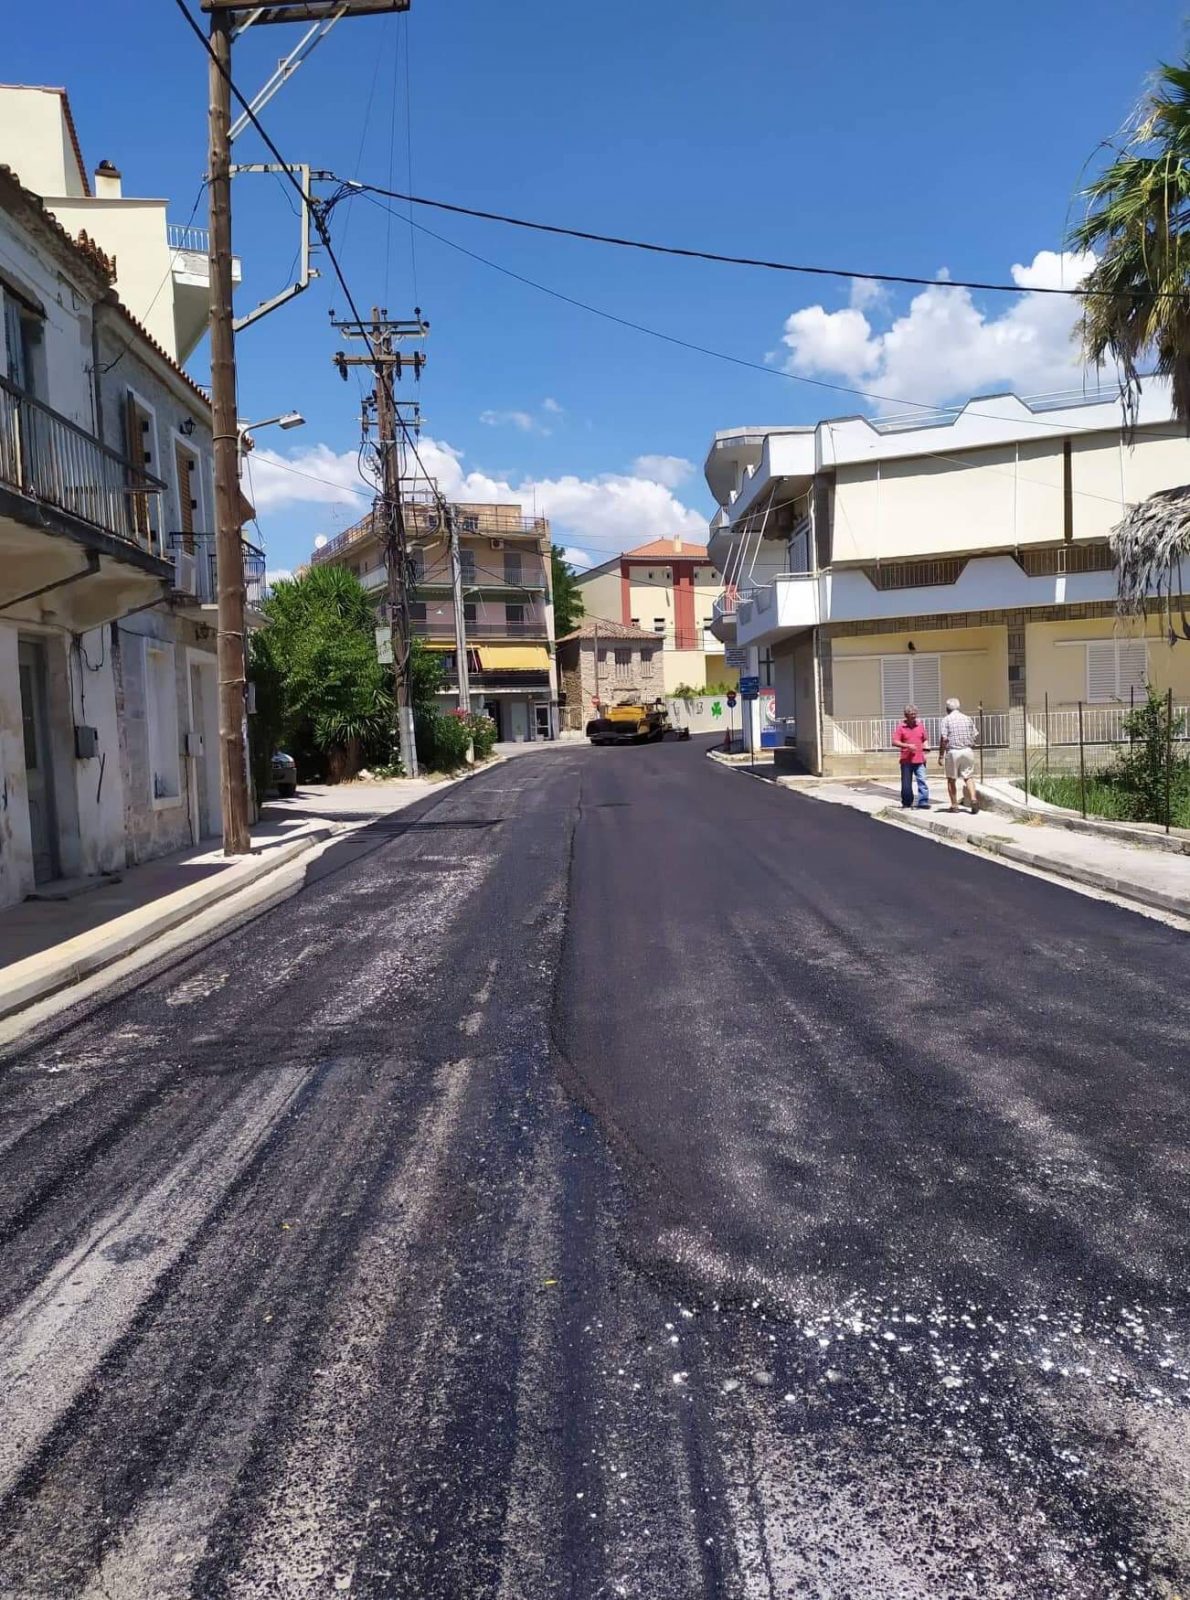 Ξεκινούν οι ασφαλτοστρώσεις στην Κοινότητα Μετοχίου του Δήμου Κύμης Αλιβερίου